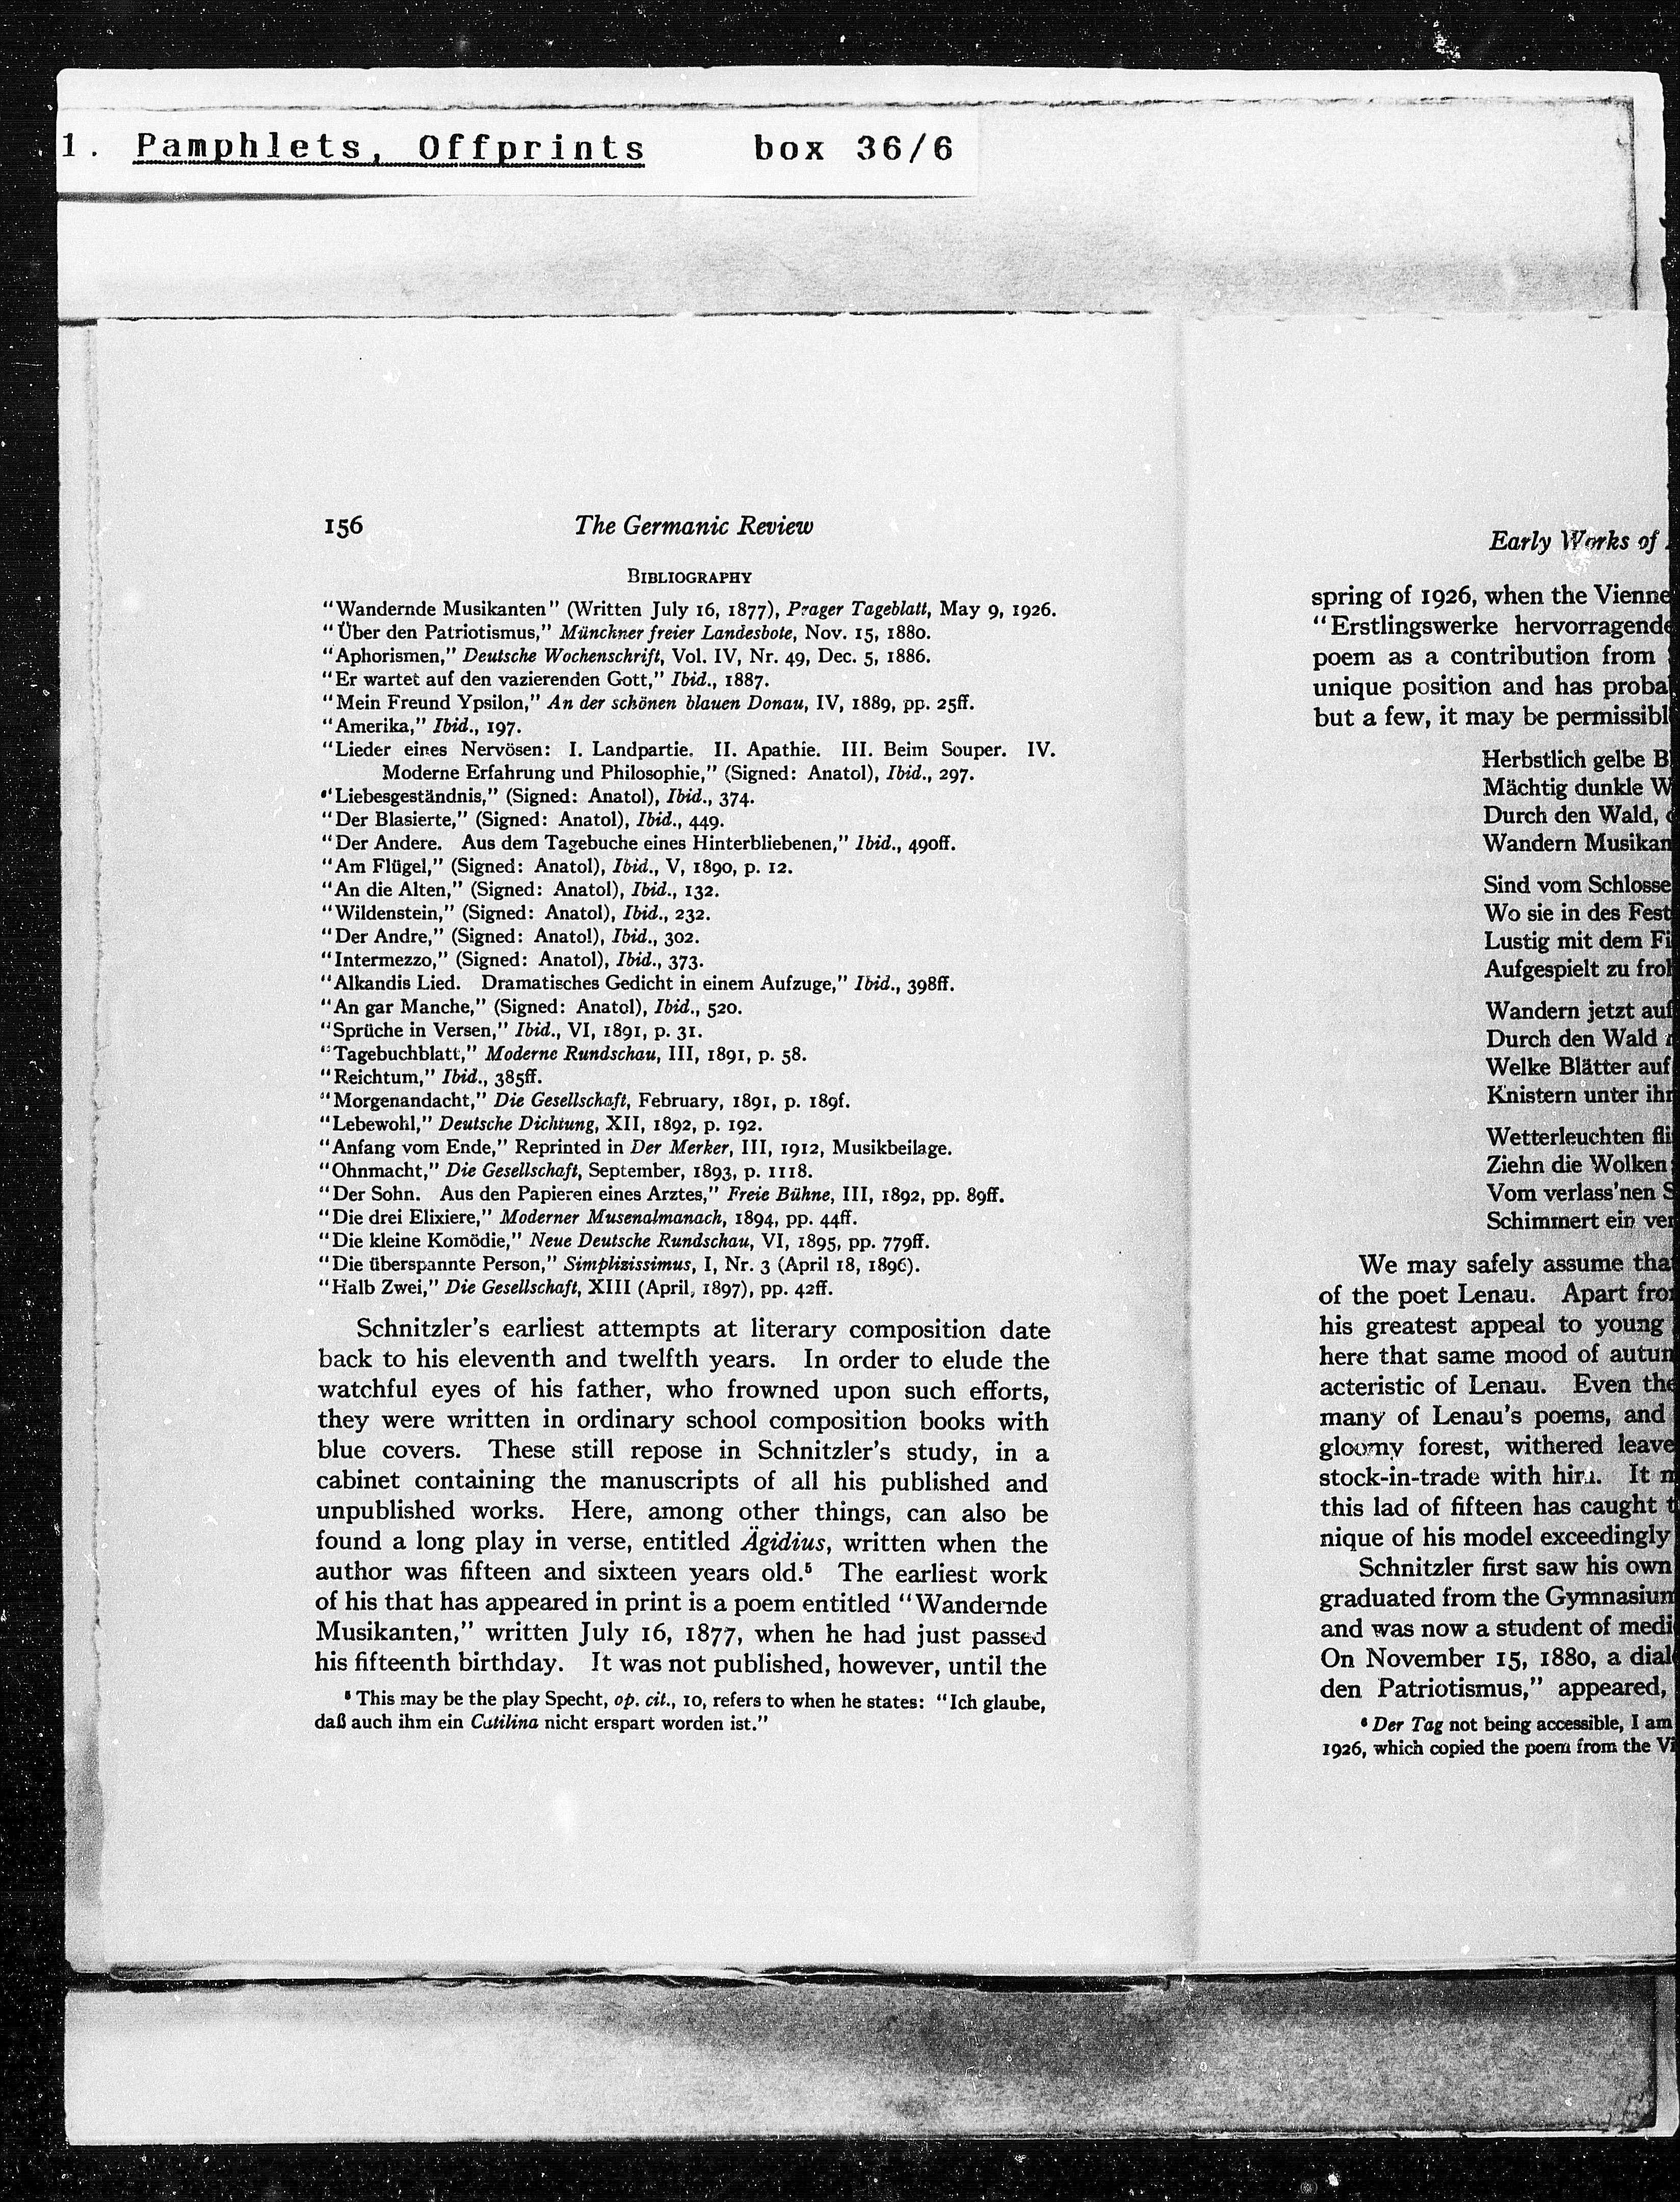 Vorschaubild für Schinnerer Early Works, Seite 5